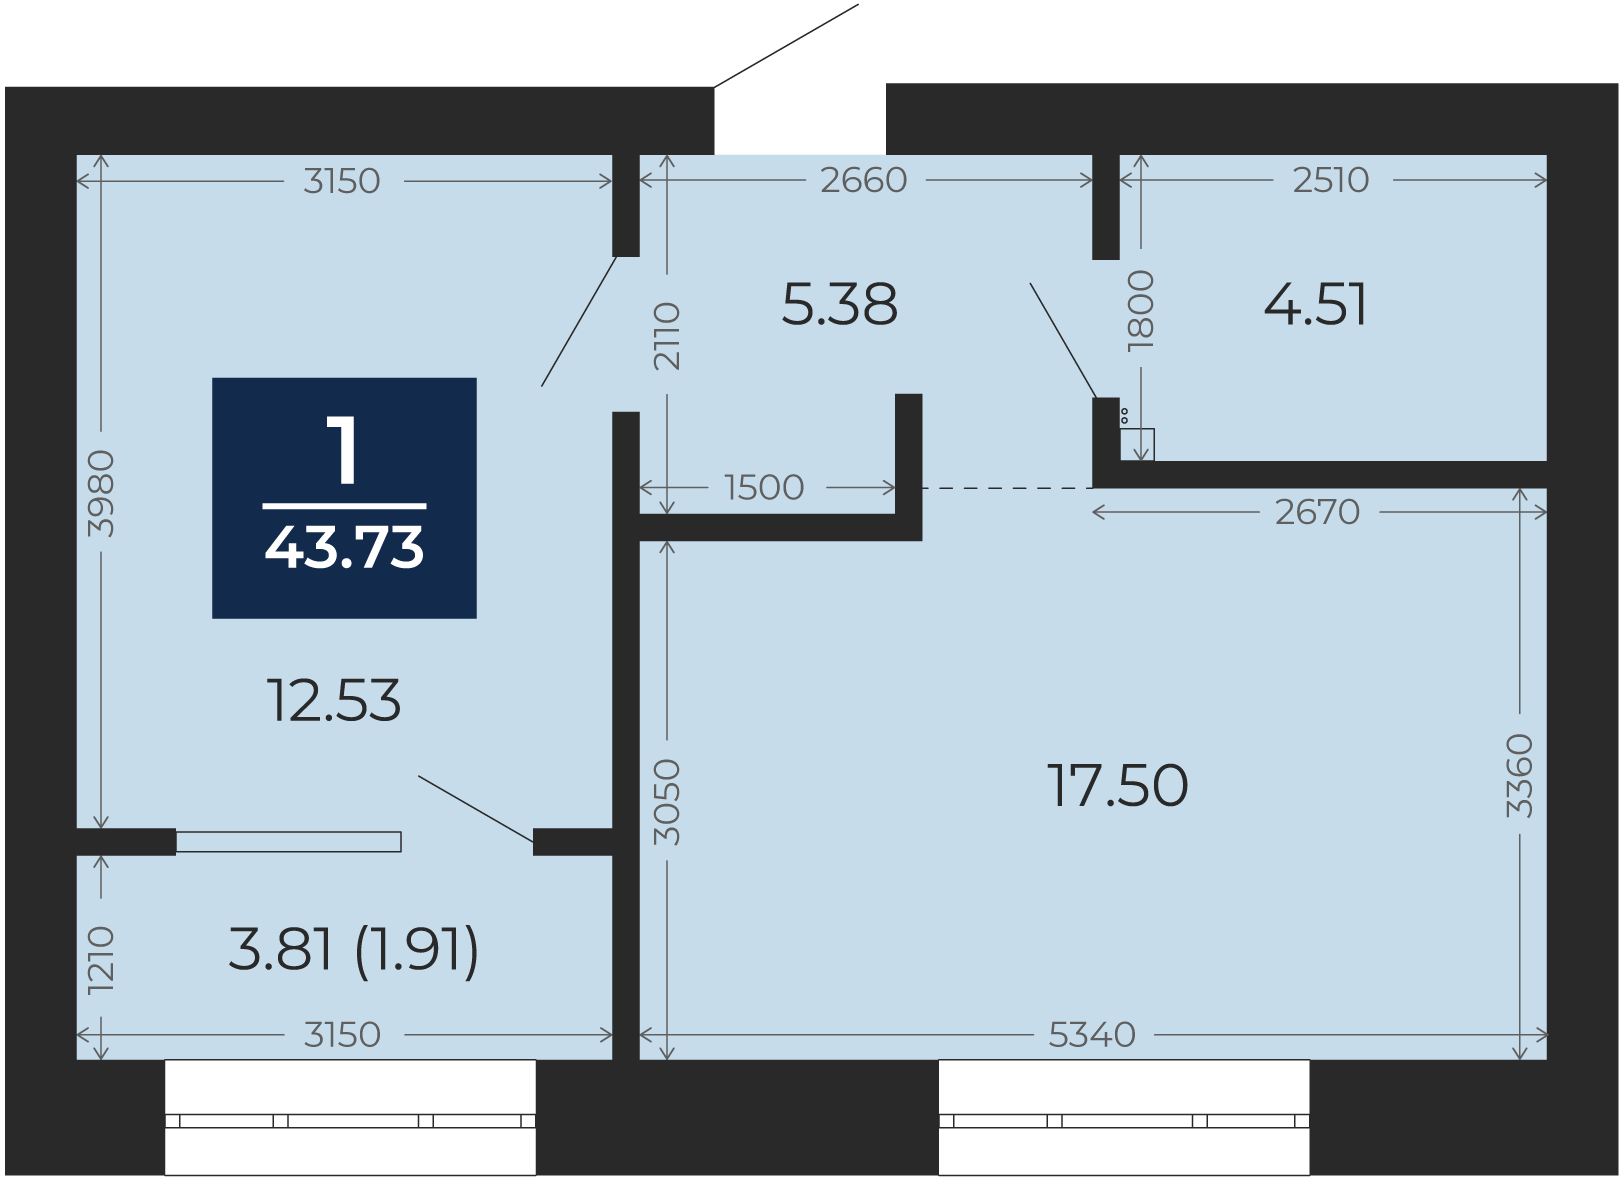 Квартира № 208, 1-комнатная, 43.73 кв. м, 4 этаж